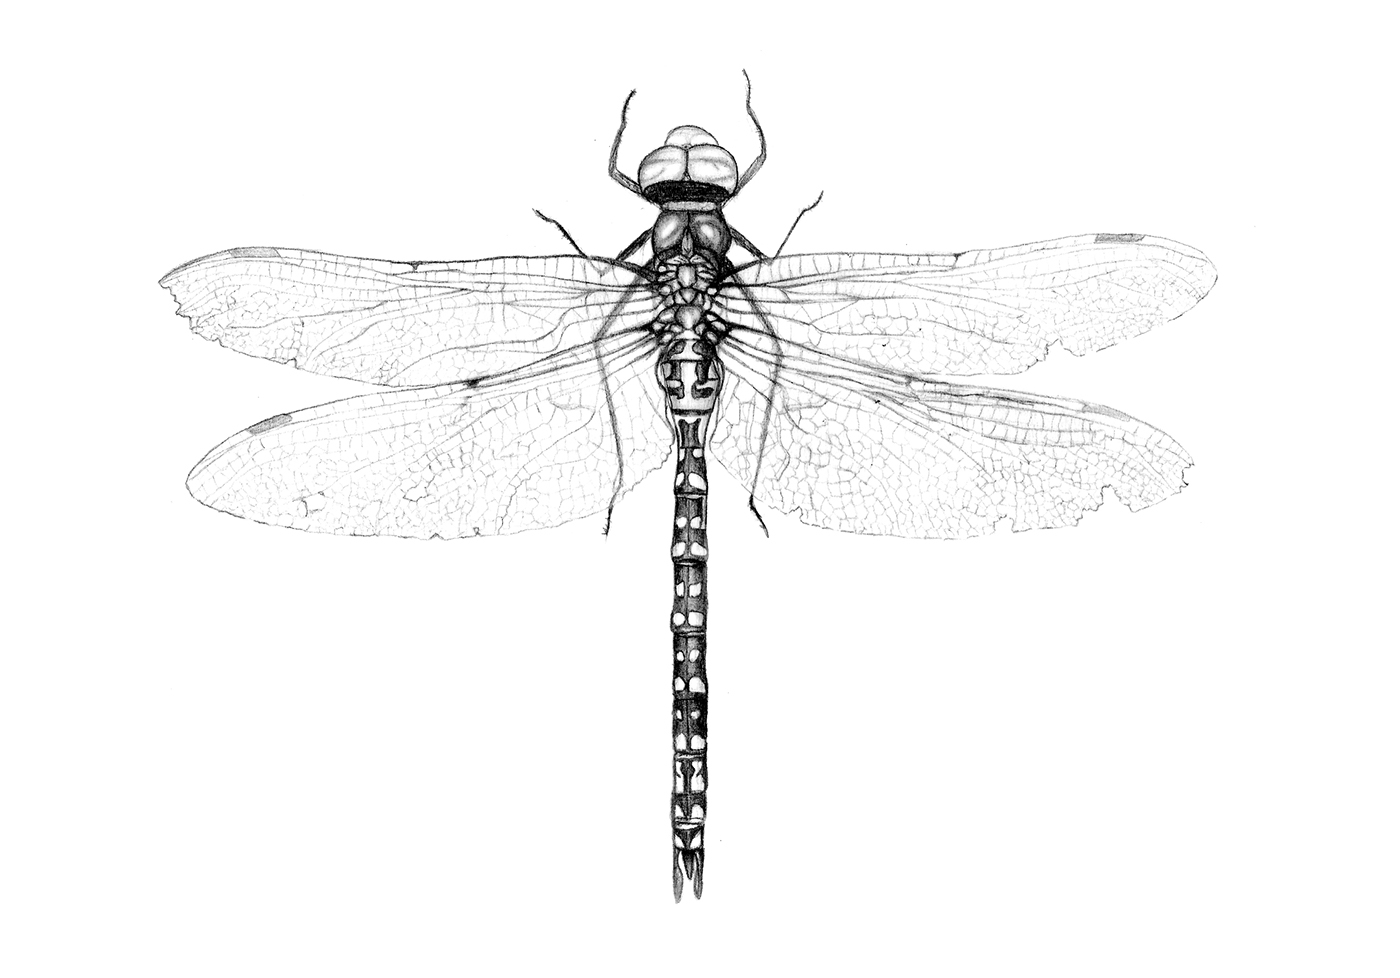 libelula dragonfly ilustracion científica insectos digital scientific mariposa insecto